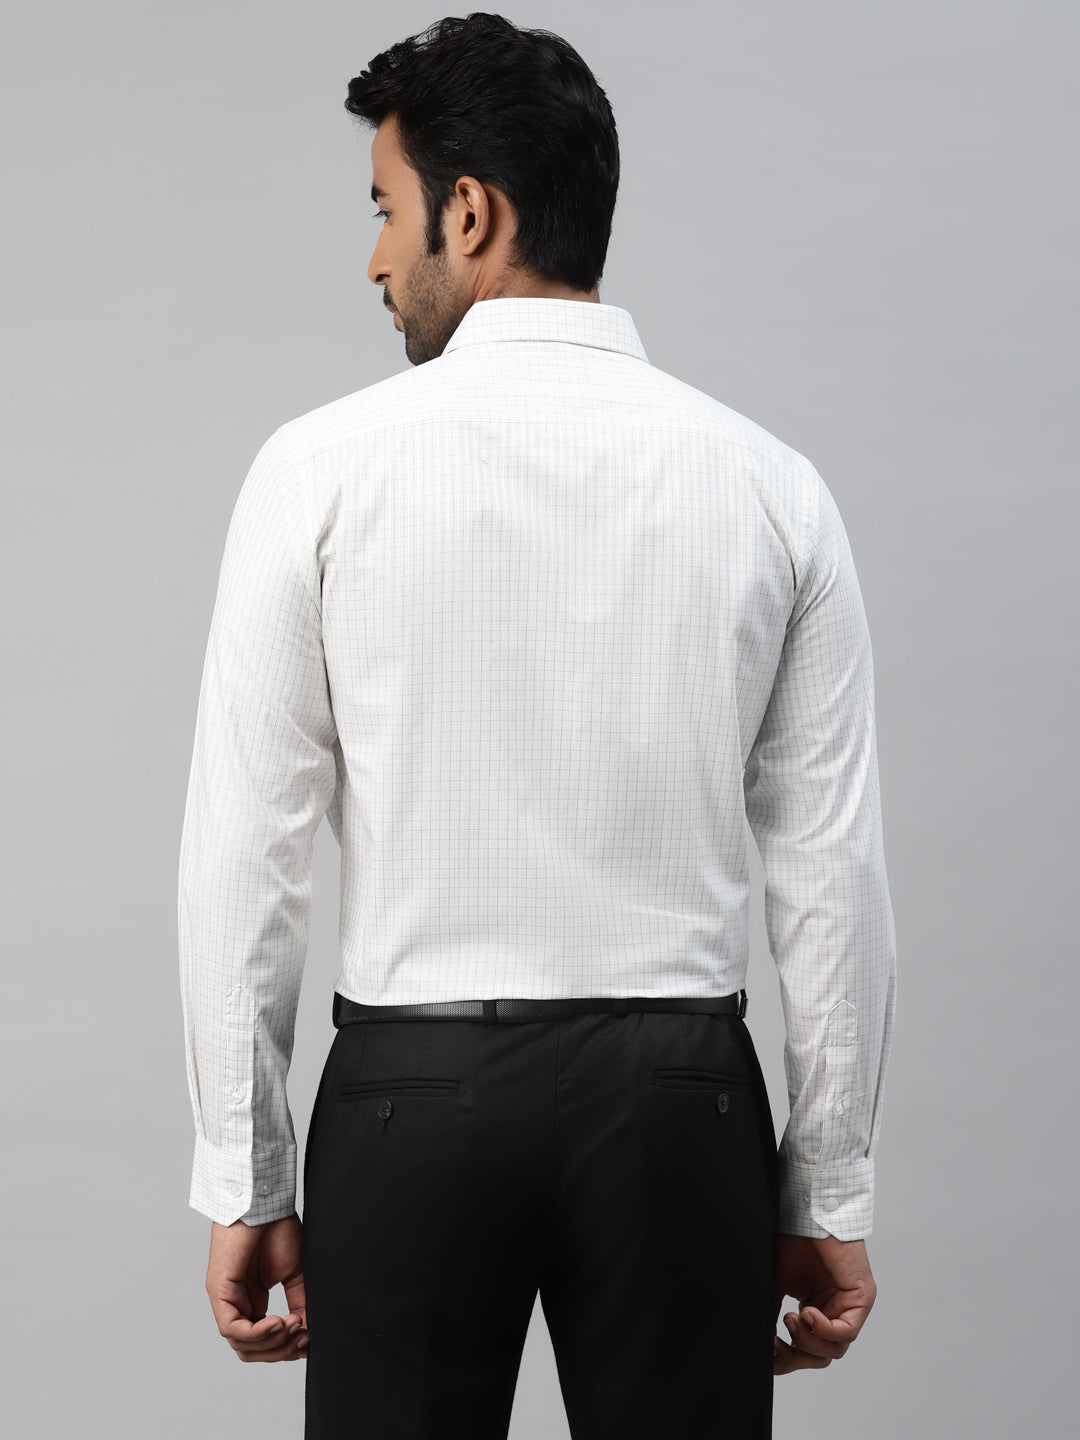 Men's White Checks Slim Fit Shirt by Don Vino